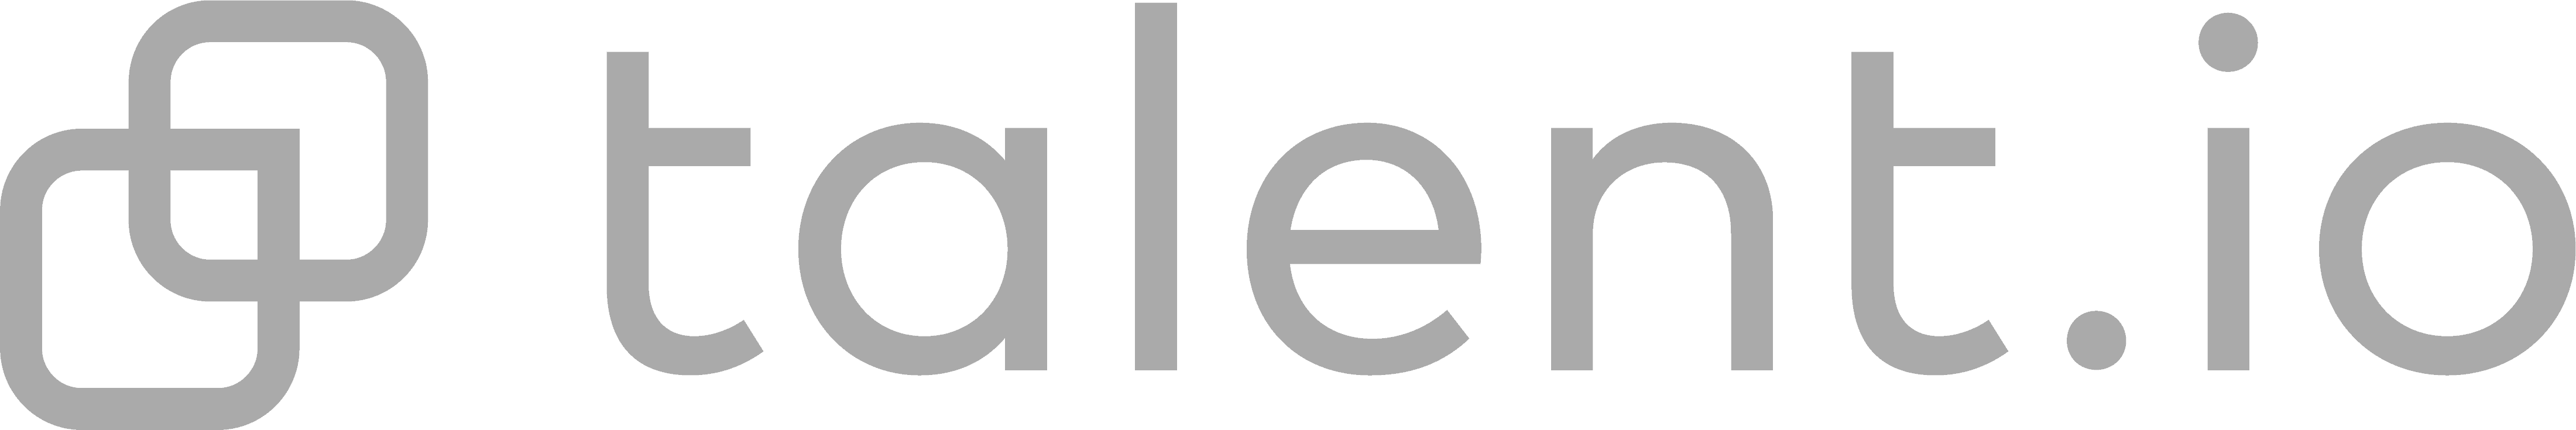 Logo de Talent.io avec des éléments carrés qui se chevauchent à gauche et le mot « talent.io » écrit en lettres minuscules à droite.